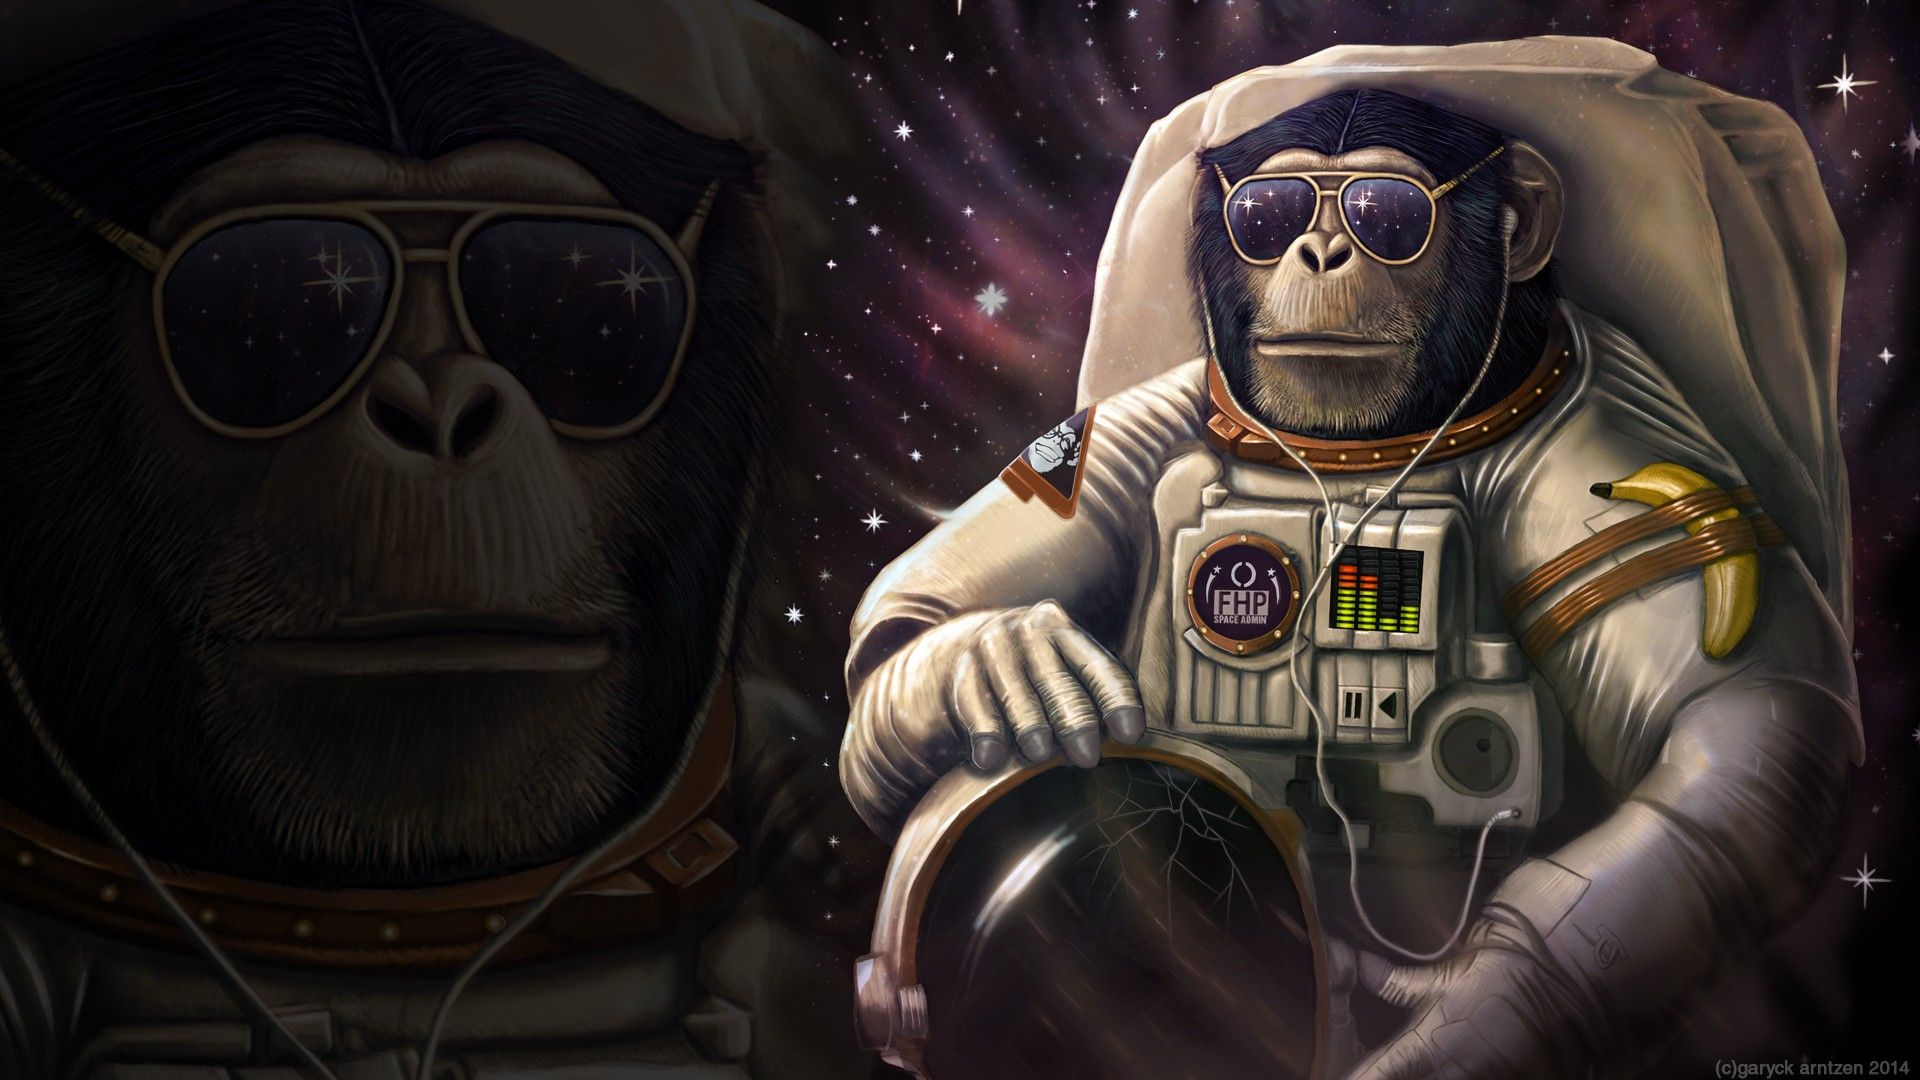 クールな猿の壁紙,宇宙飛行士,アニメーション,スペース,架空の人物,図